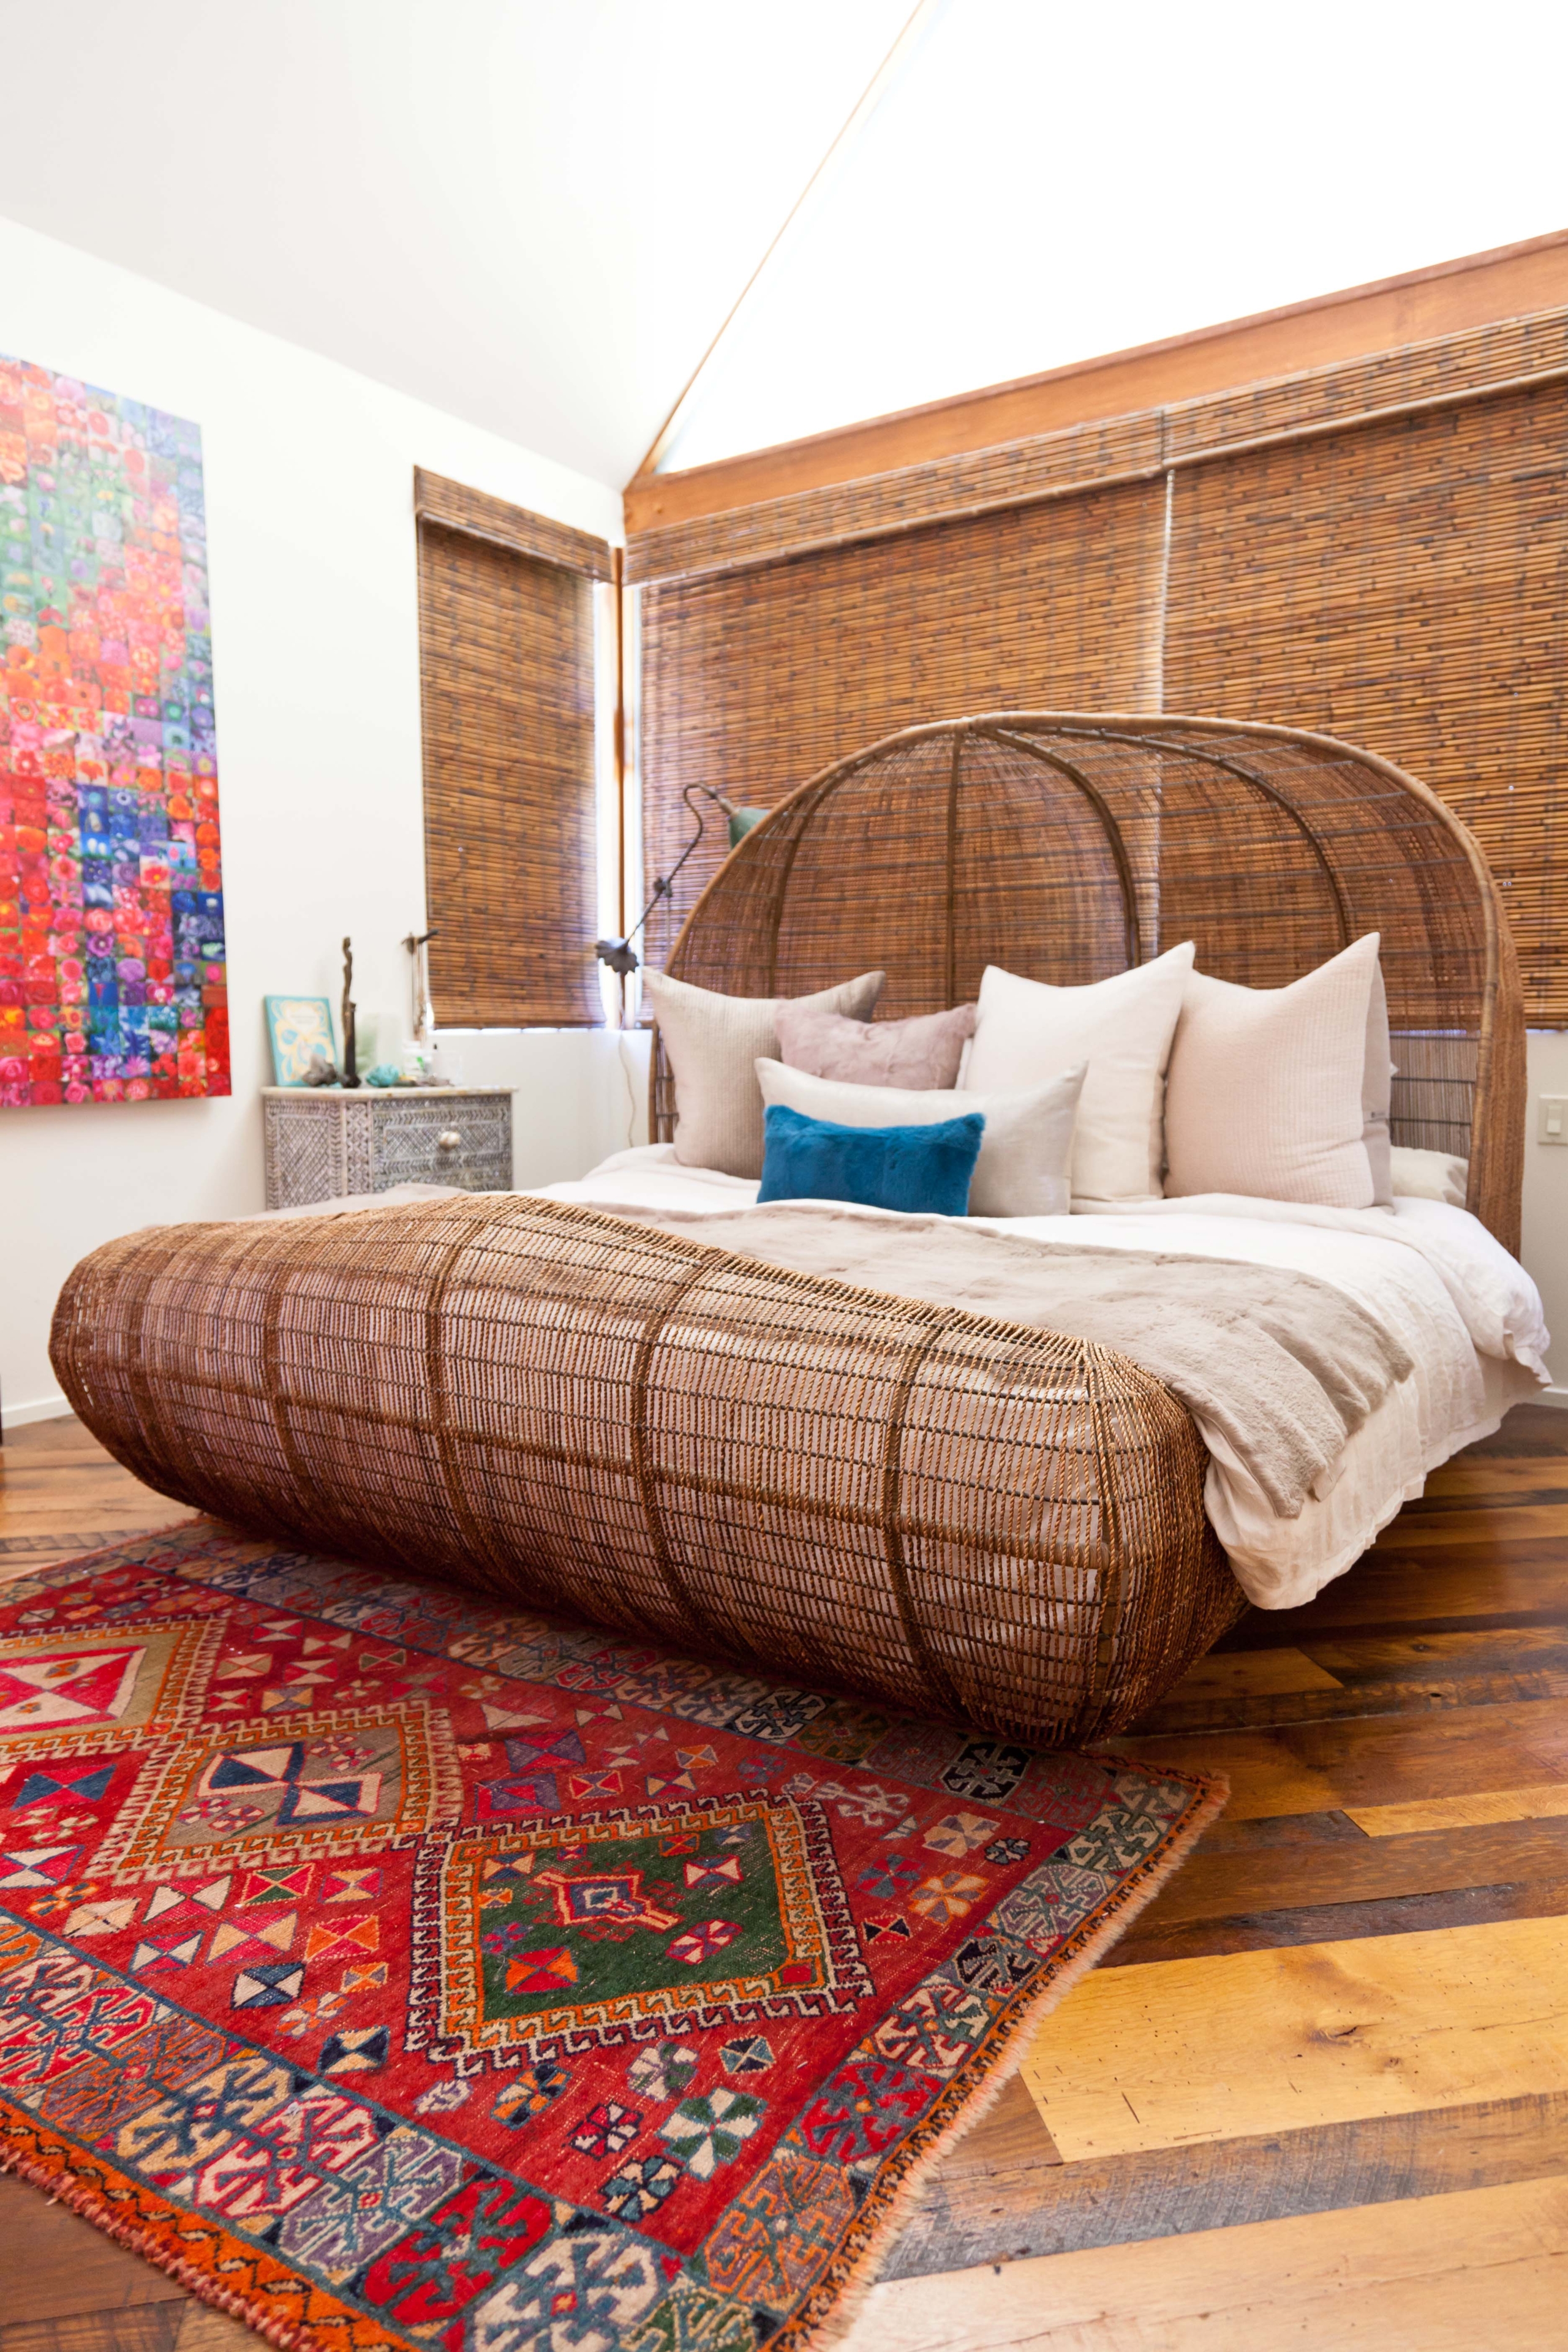 Cane bedroom furniture